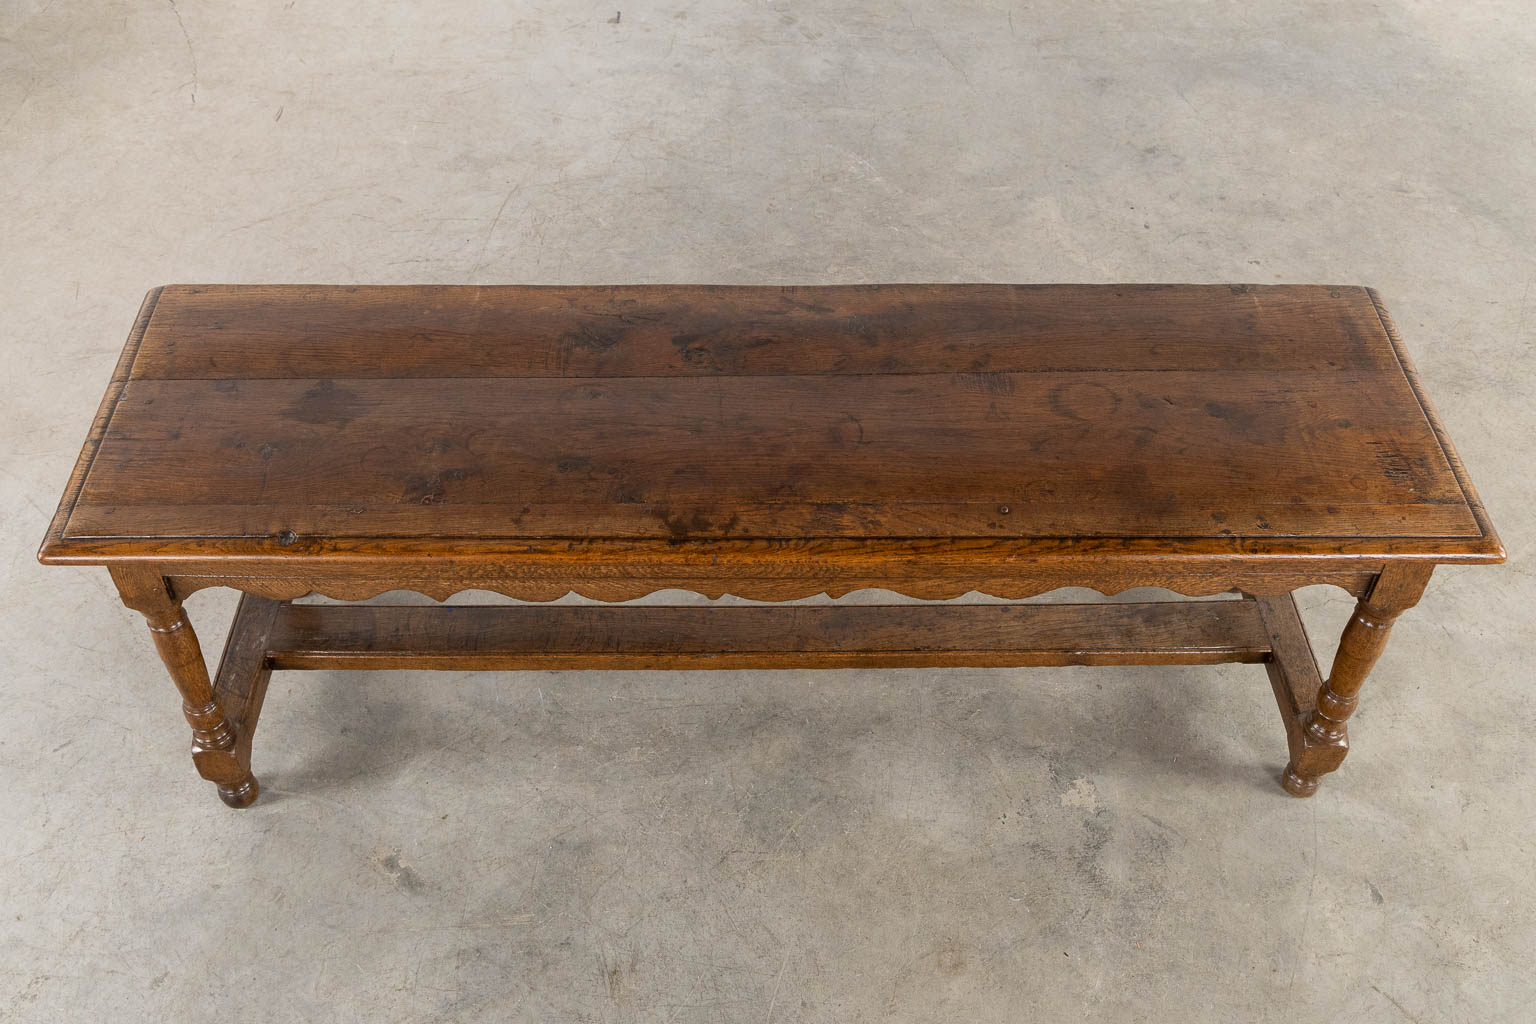 An antique side table, sculptured oak. 19th C. (L:46 x W:154 x H:53 cm) - Image 9 of 9